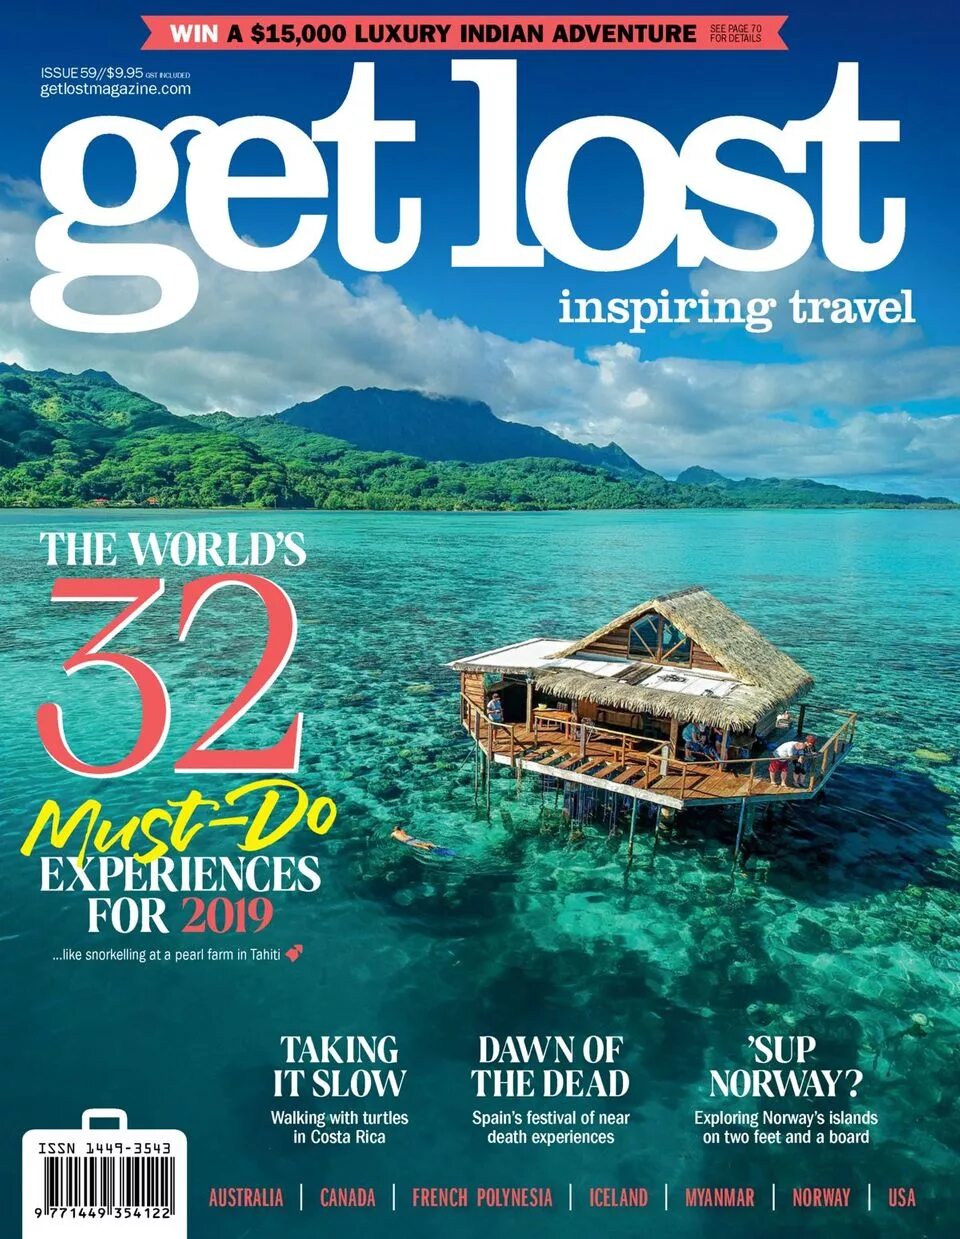 Журнал о путешествиях. Туристический журнал. Журналы по туризму и путешествиям. Travel журналы. Traveling magazine